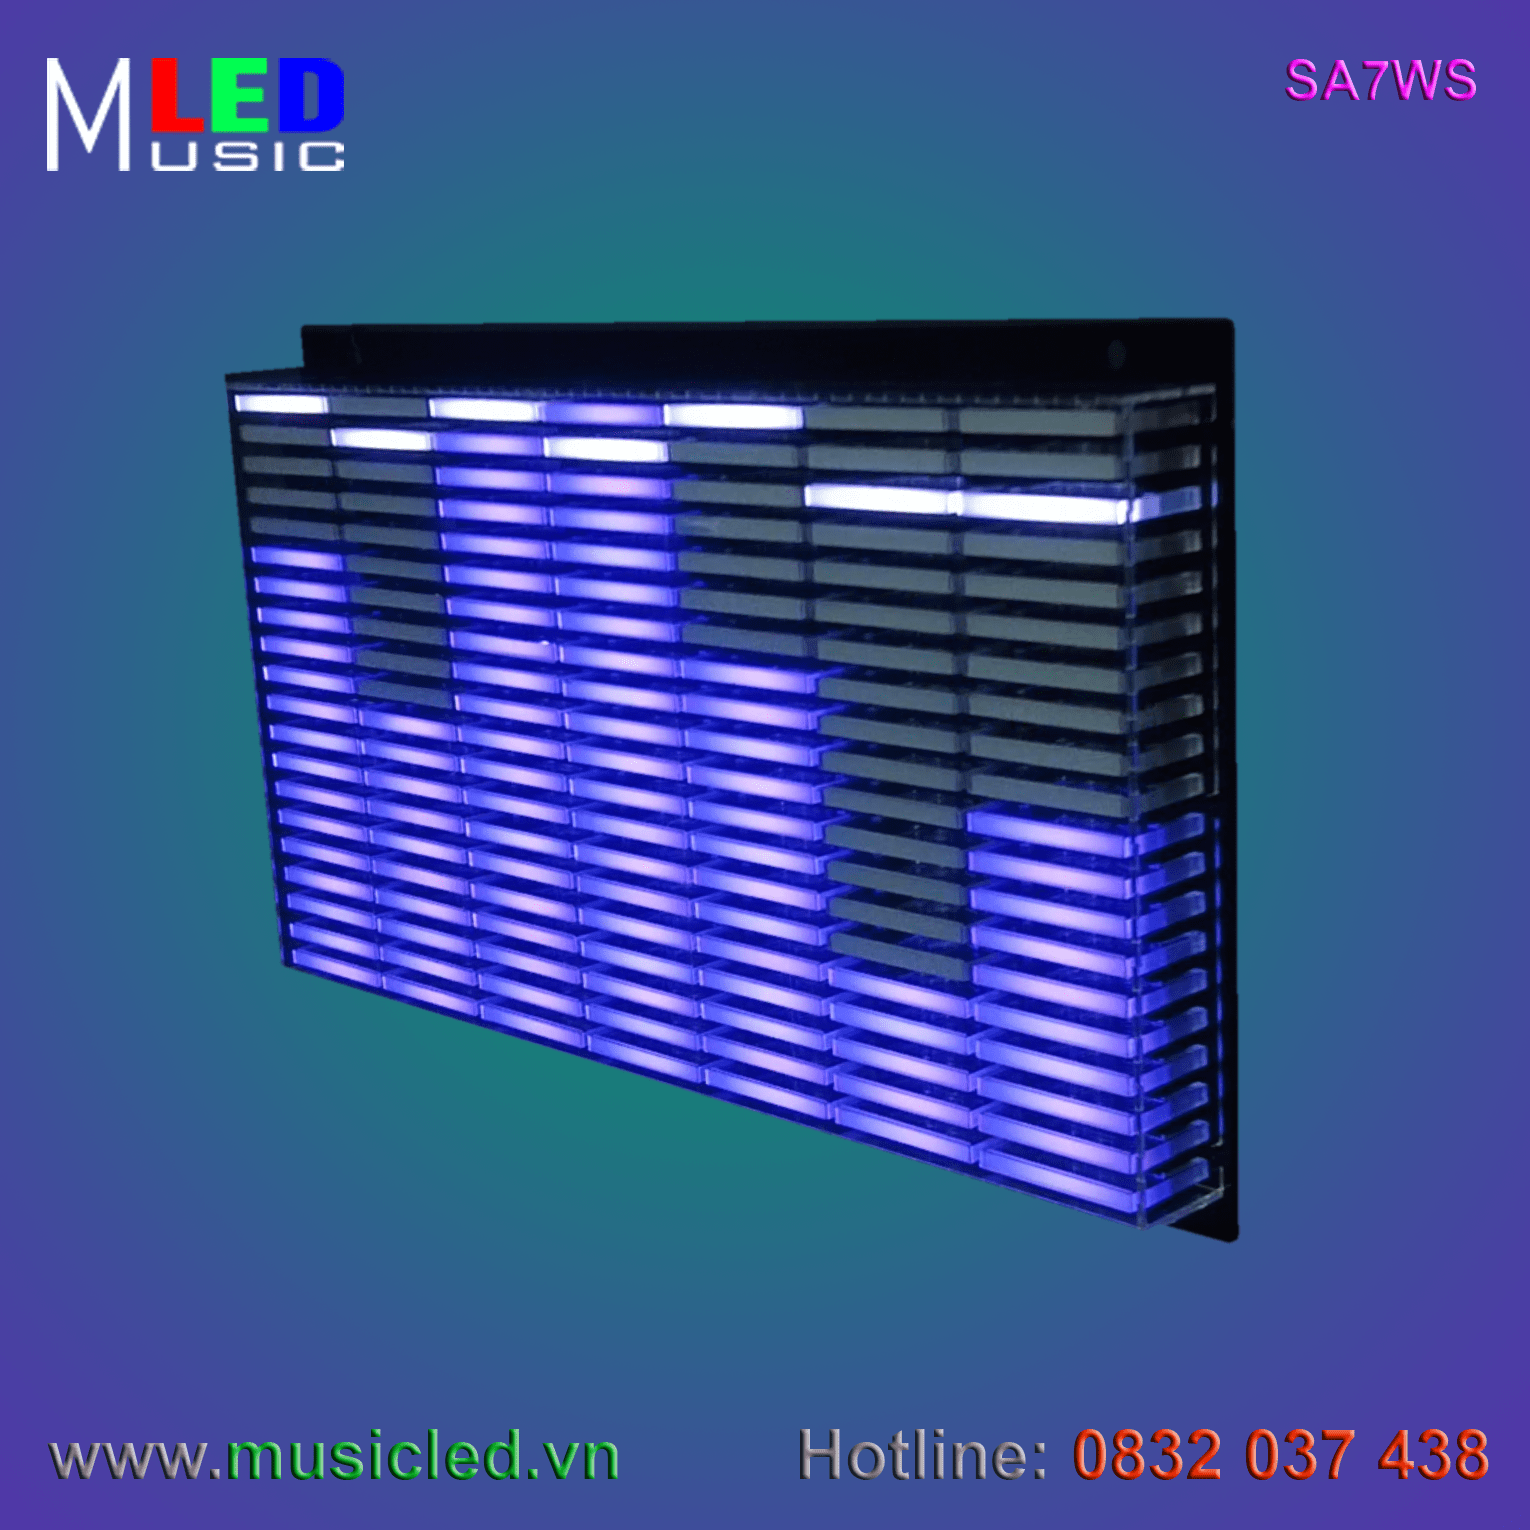 Dàn đèn Music LED nháy theo tần số nhạc 7 cột treo tường (SA7WS)